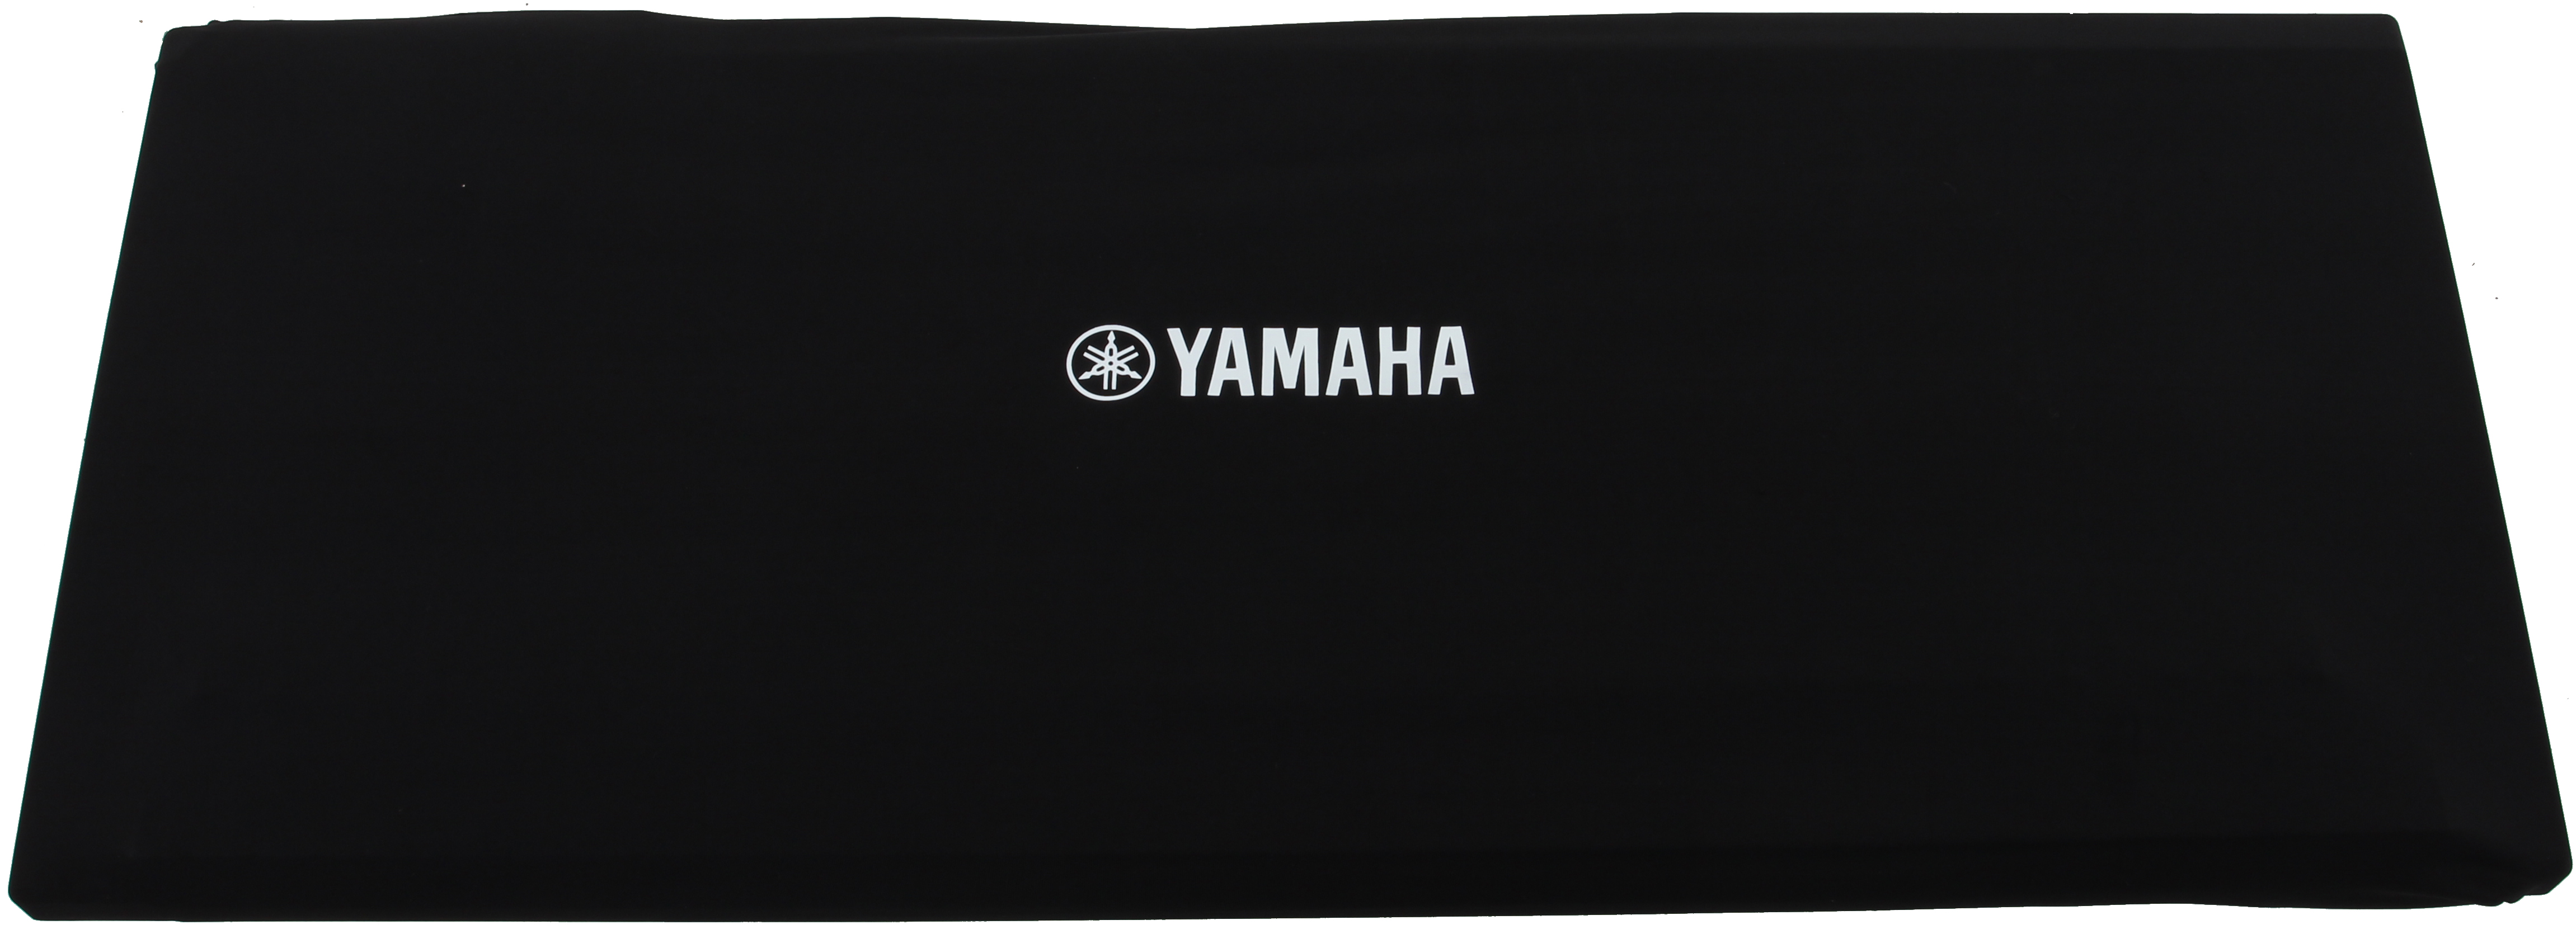 Yamaha DC2A Dust Cover 93 x 33 x 10